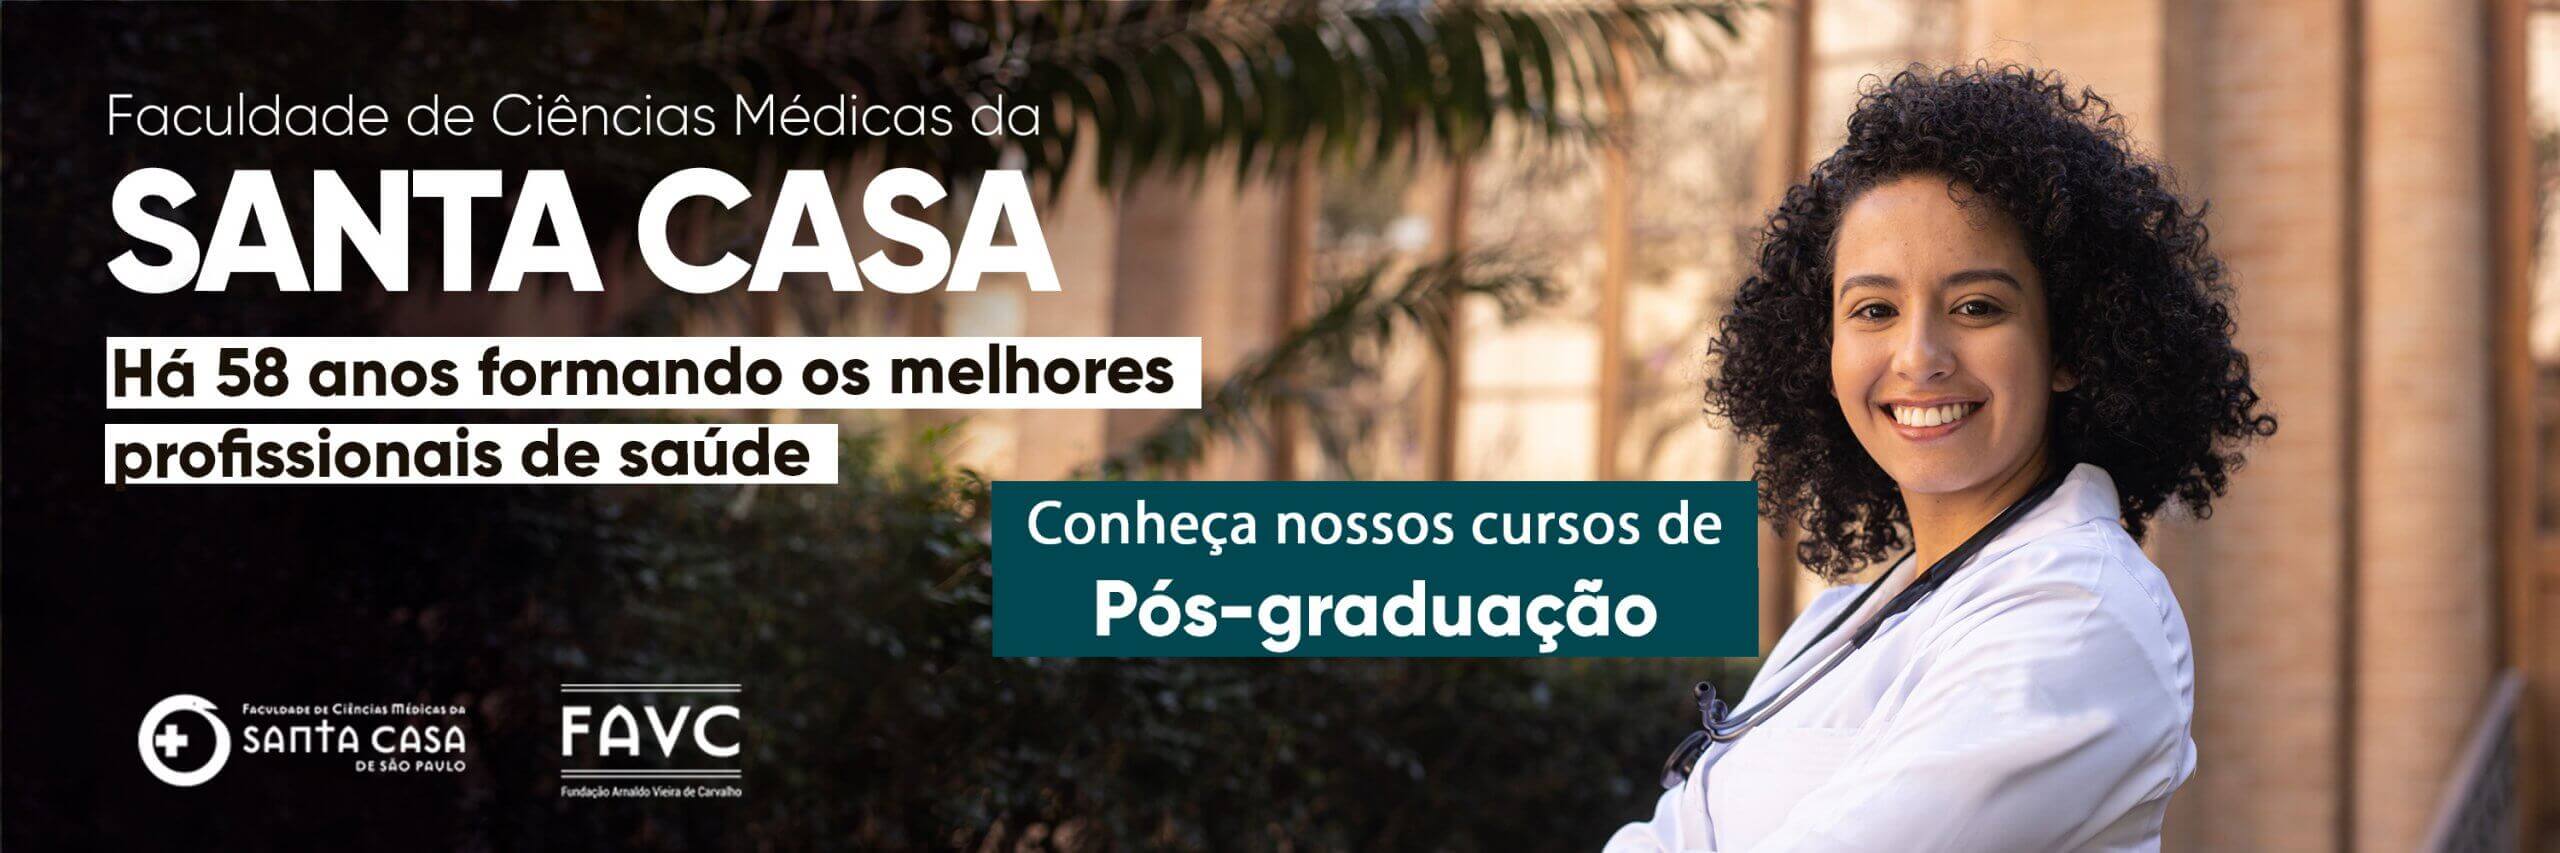 Cursos de pós graduação da Faculdade de Ciências Médicas da Santa Casa de São Paulo